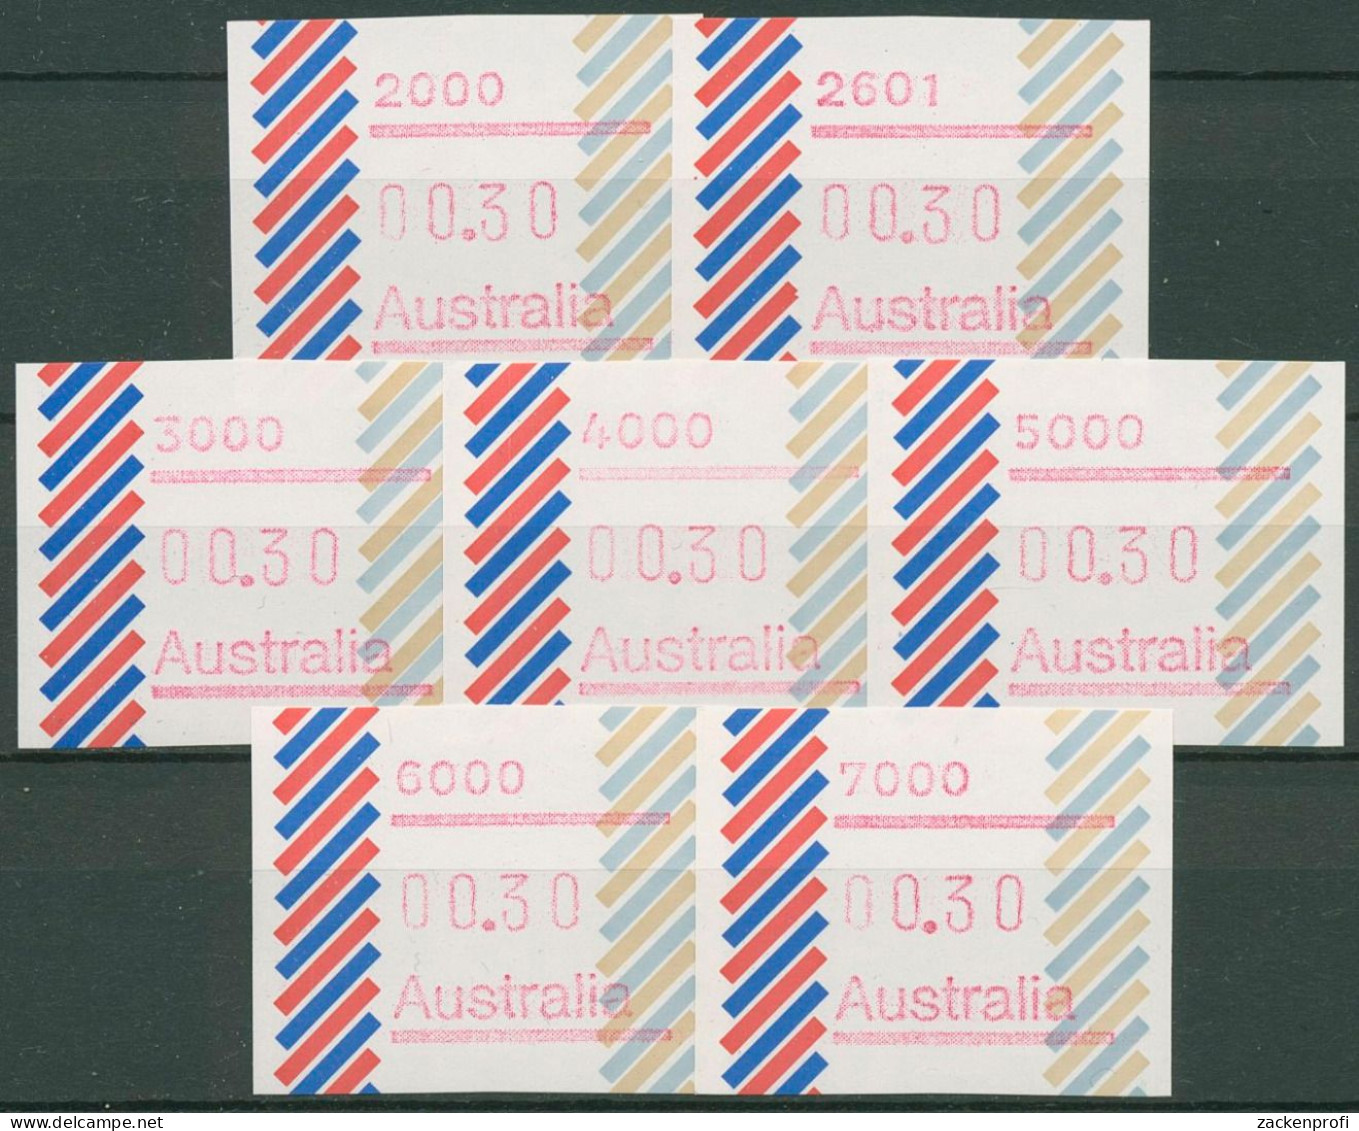 Australien 1984 Balken PO-Set (7) Automatenmarke 1 Postfrisch - Machine Labels [ATM]